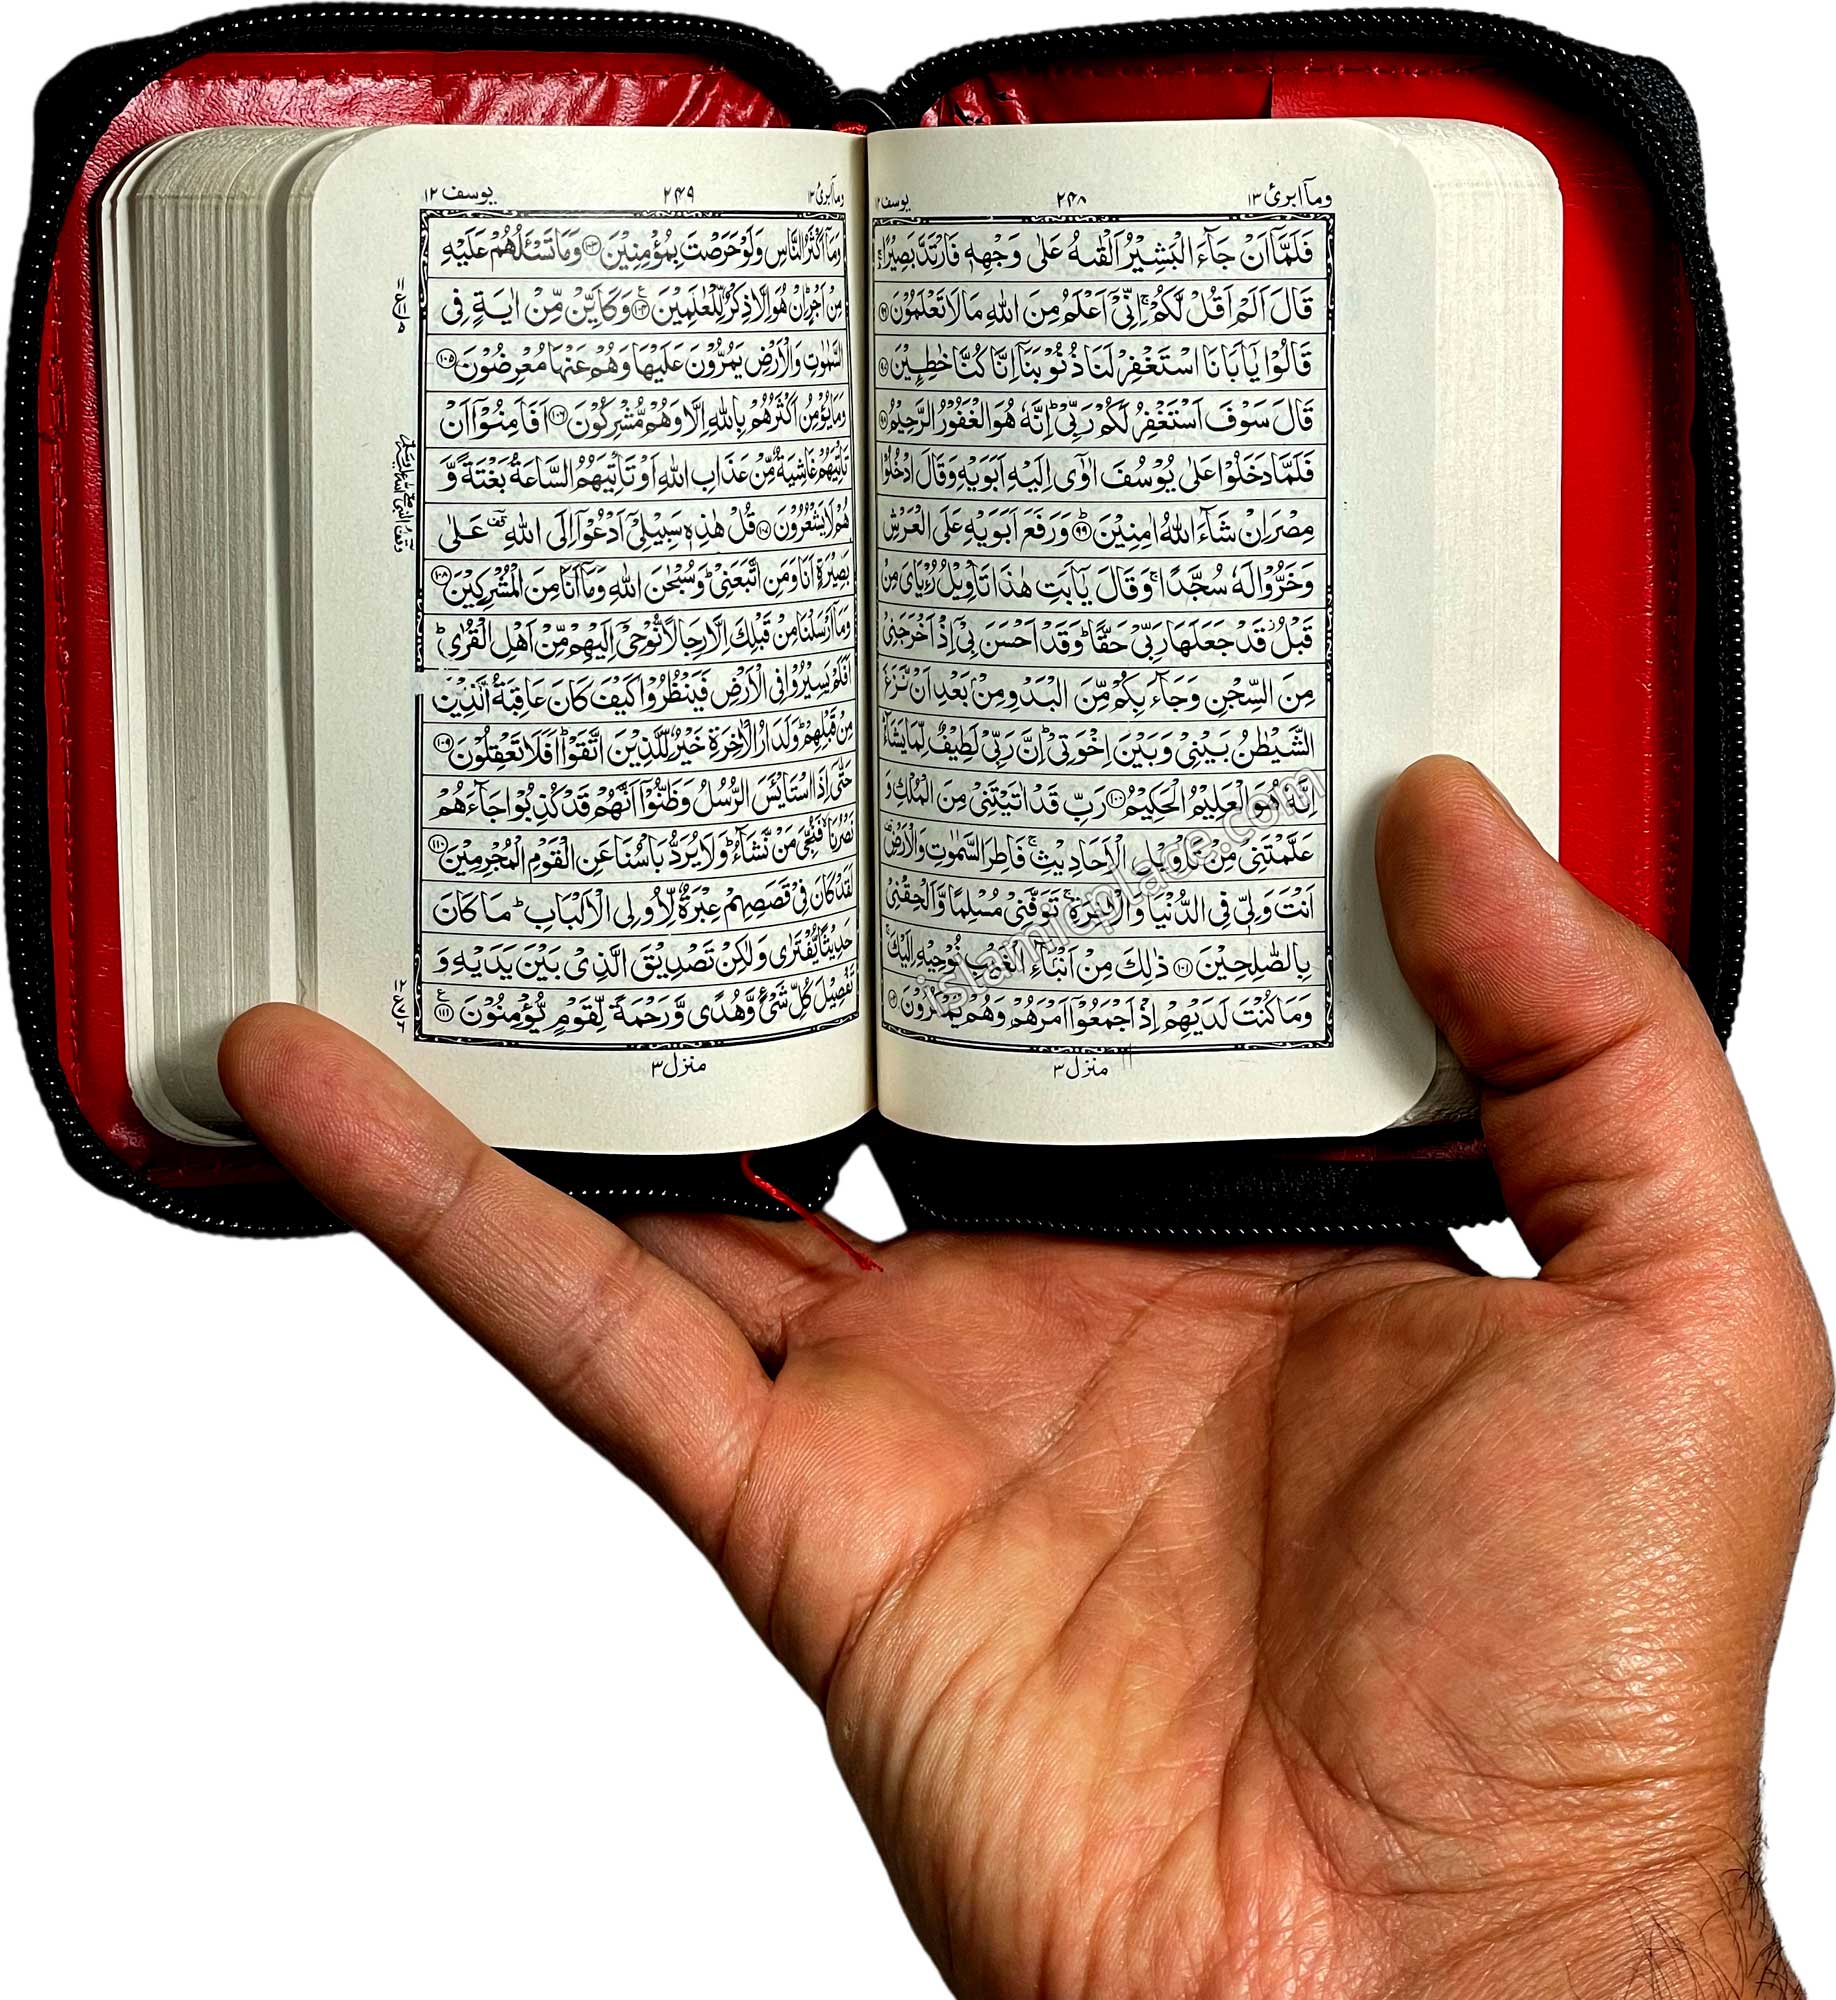 Arabic: Quran Mushaf IndoPak Persian script (3" x 4.5") Zipper case (Ref# 147) 15 line